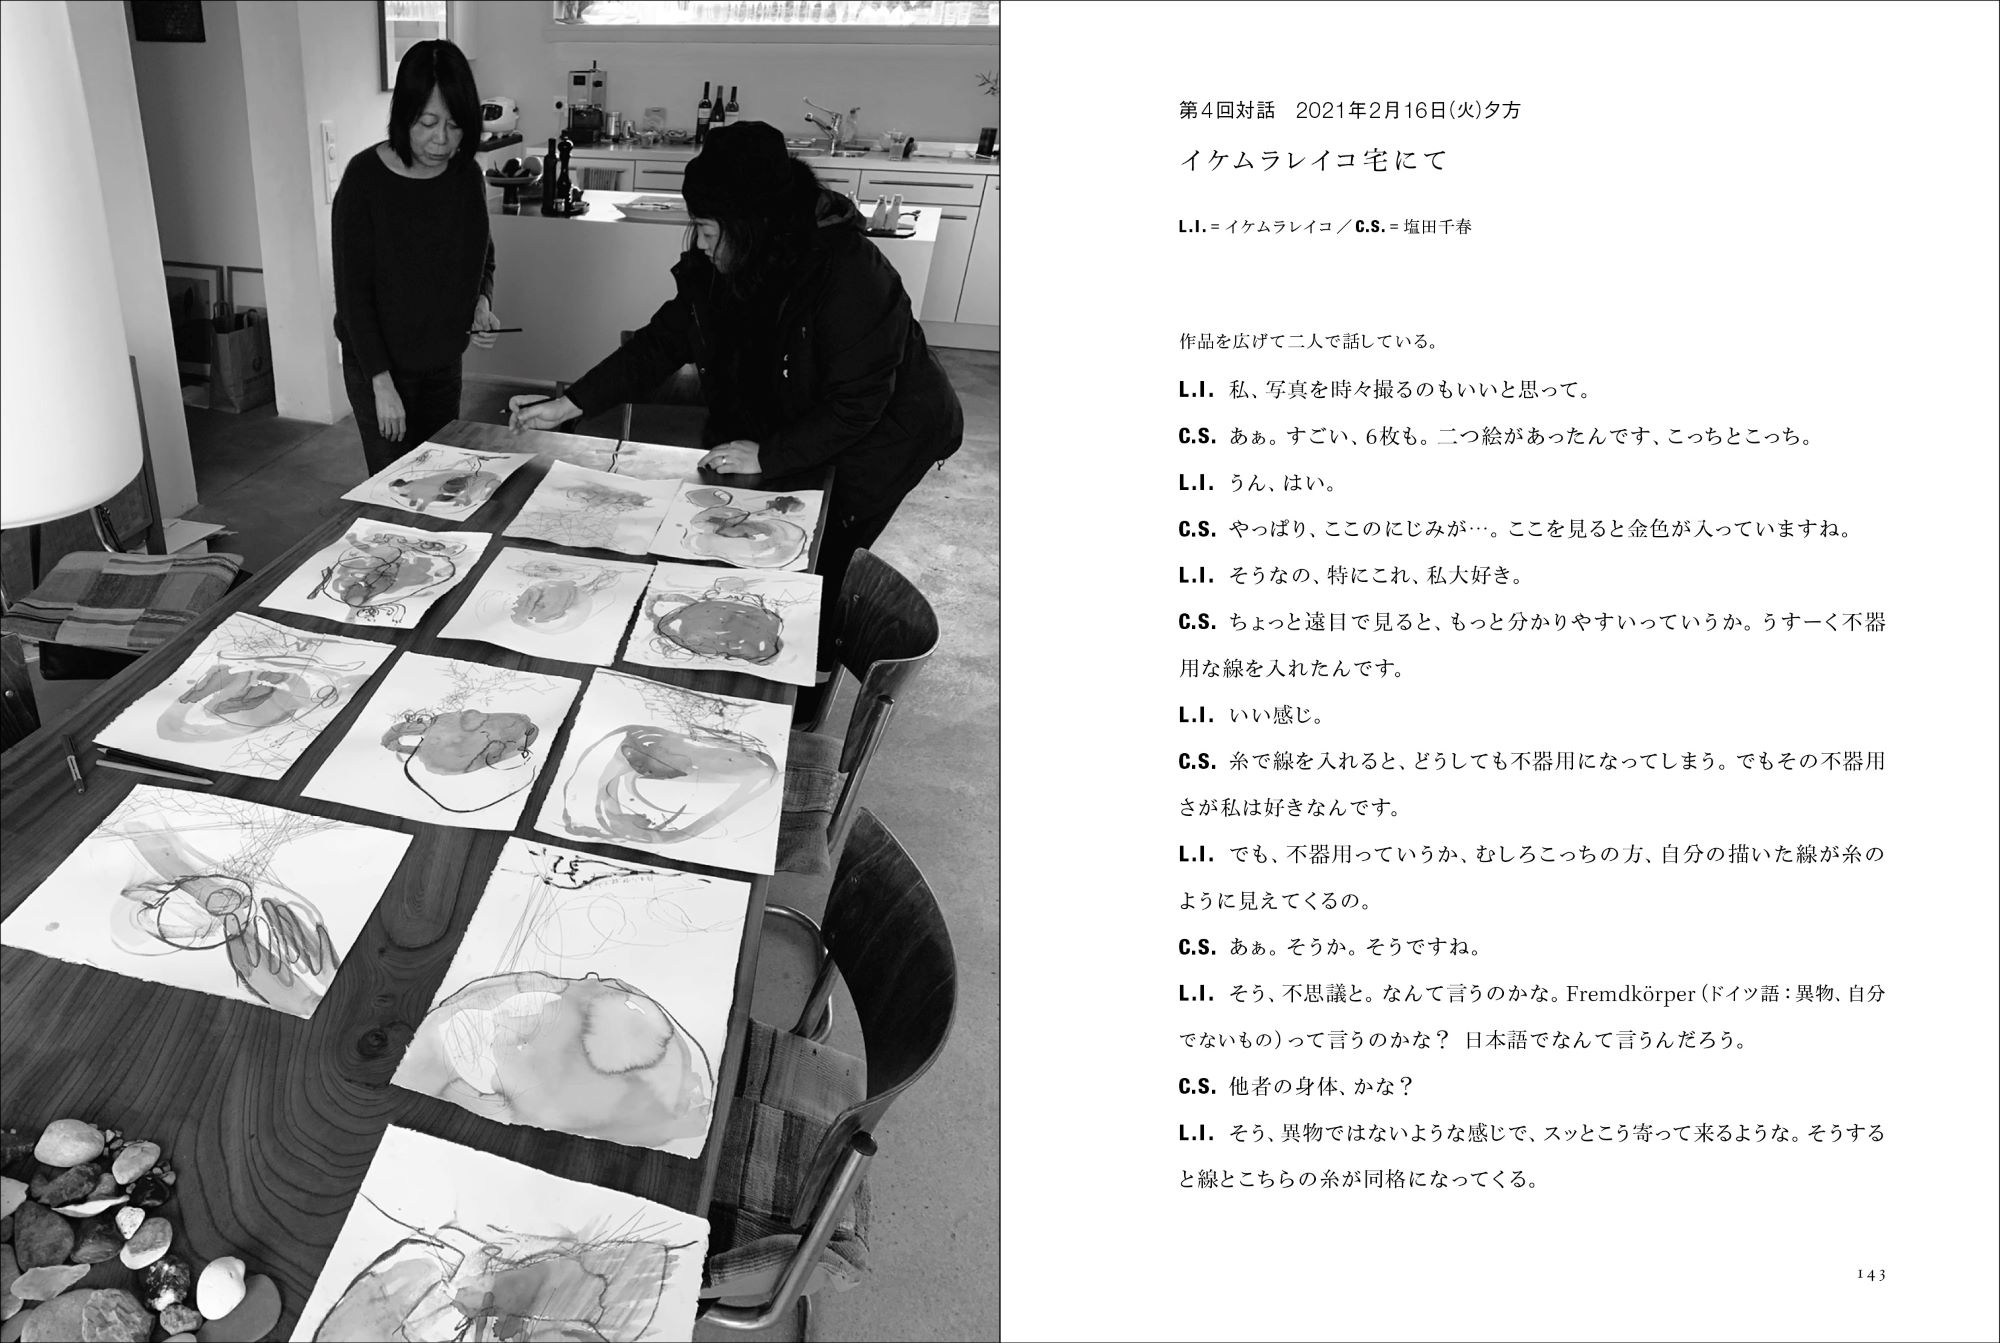 イケムラレイコ 塩田千春の初の対話集が発売へ 刊行記念展も銀座 蔦屋書店で開催中 Tokyo Art Beat